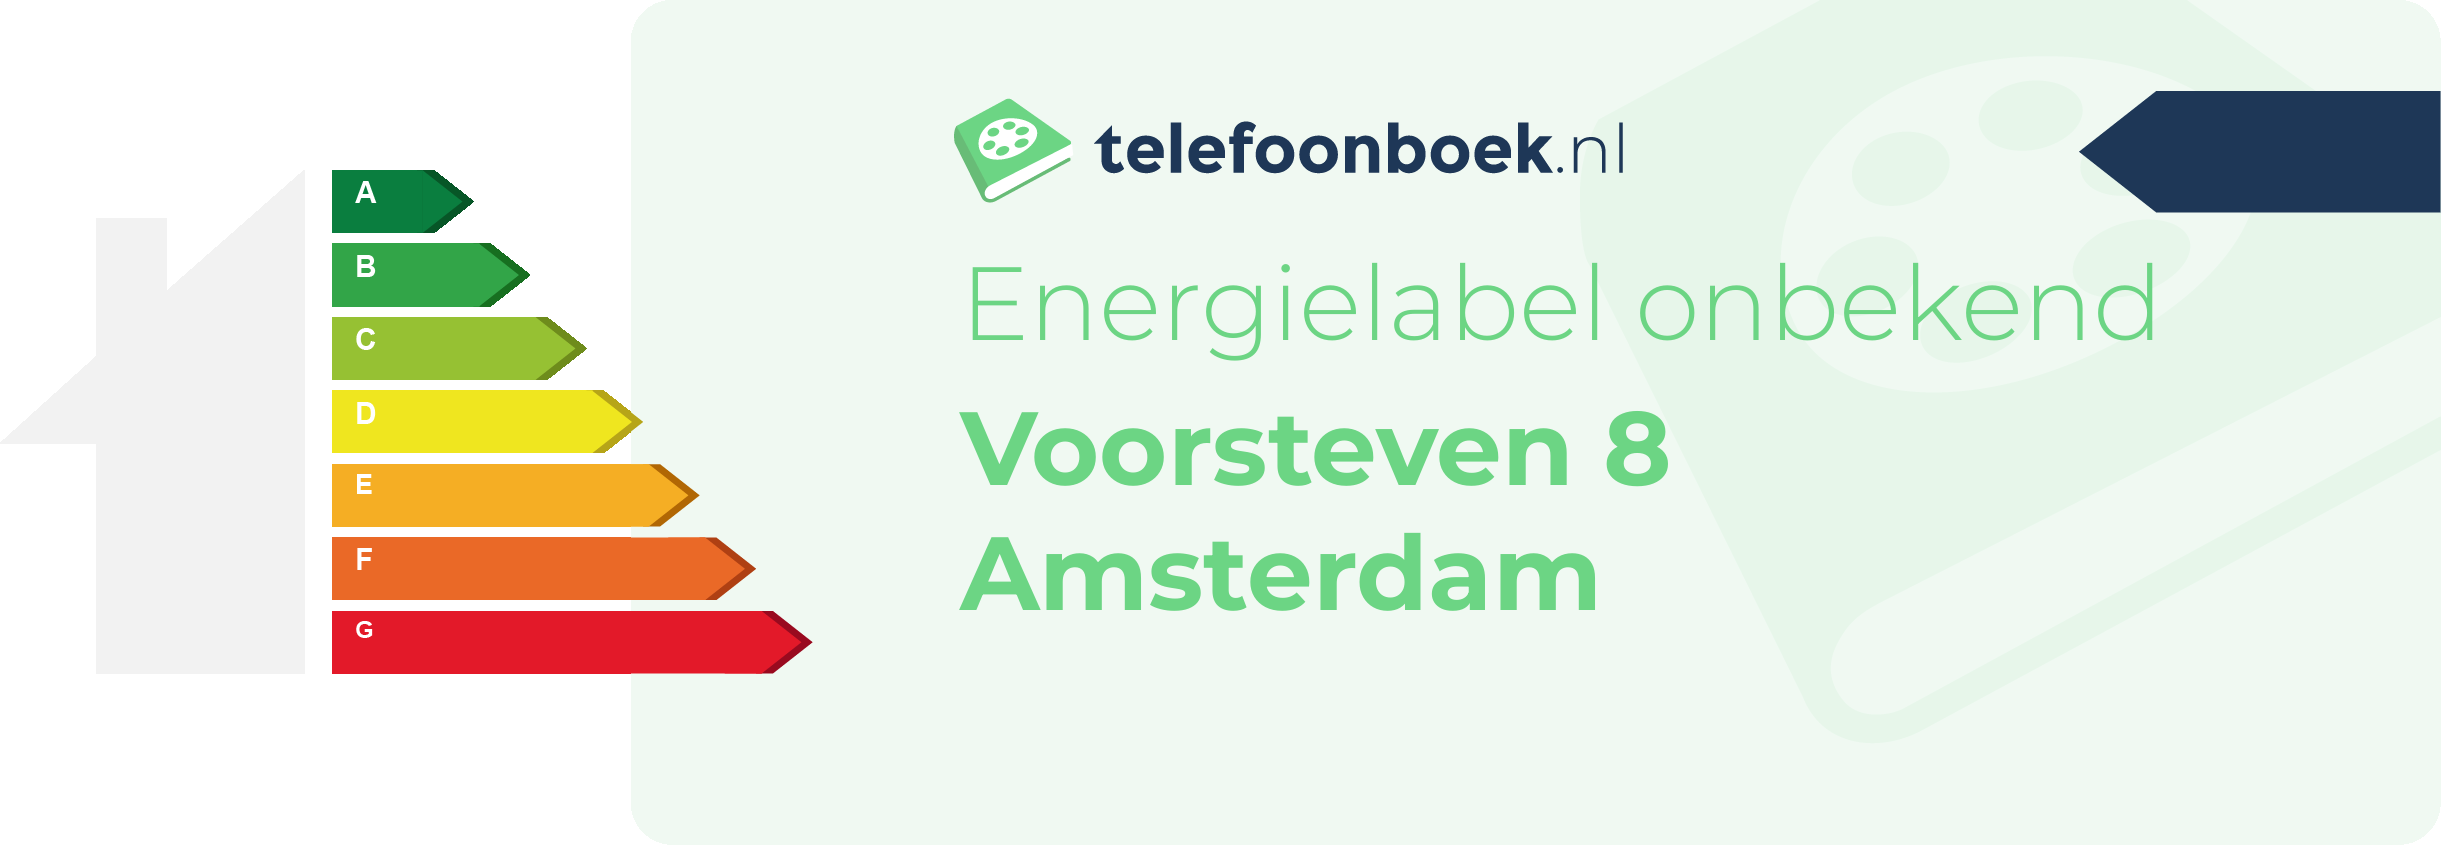 Energielabel Voorsteven 8 Amsterdam